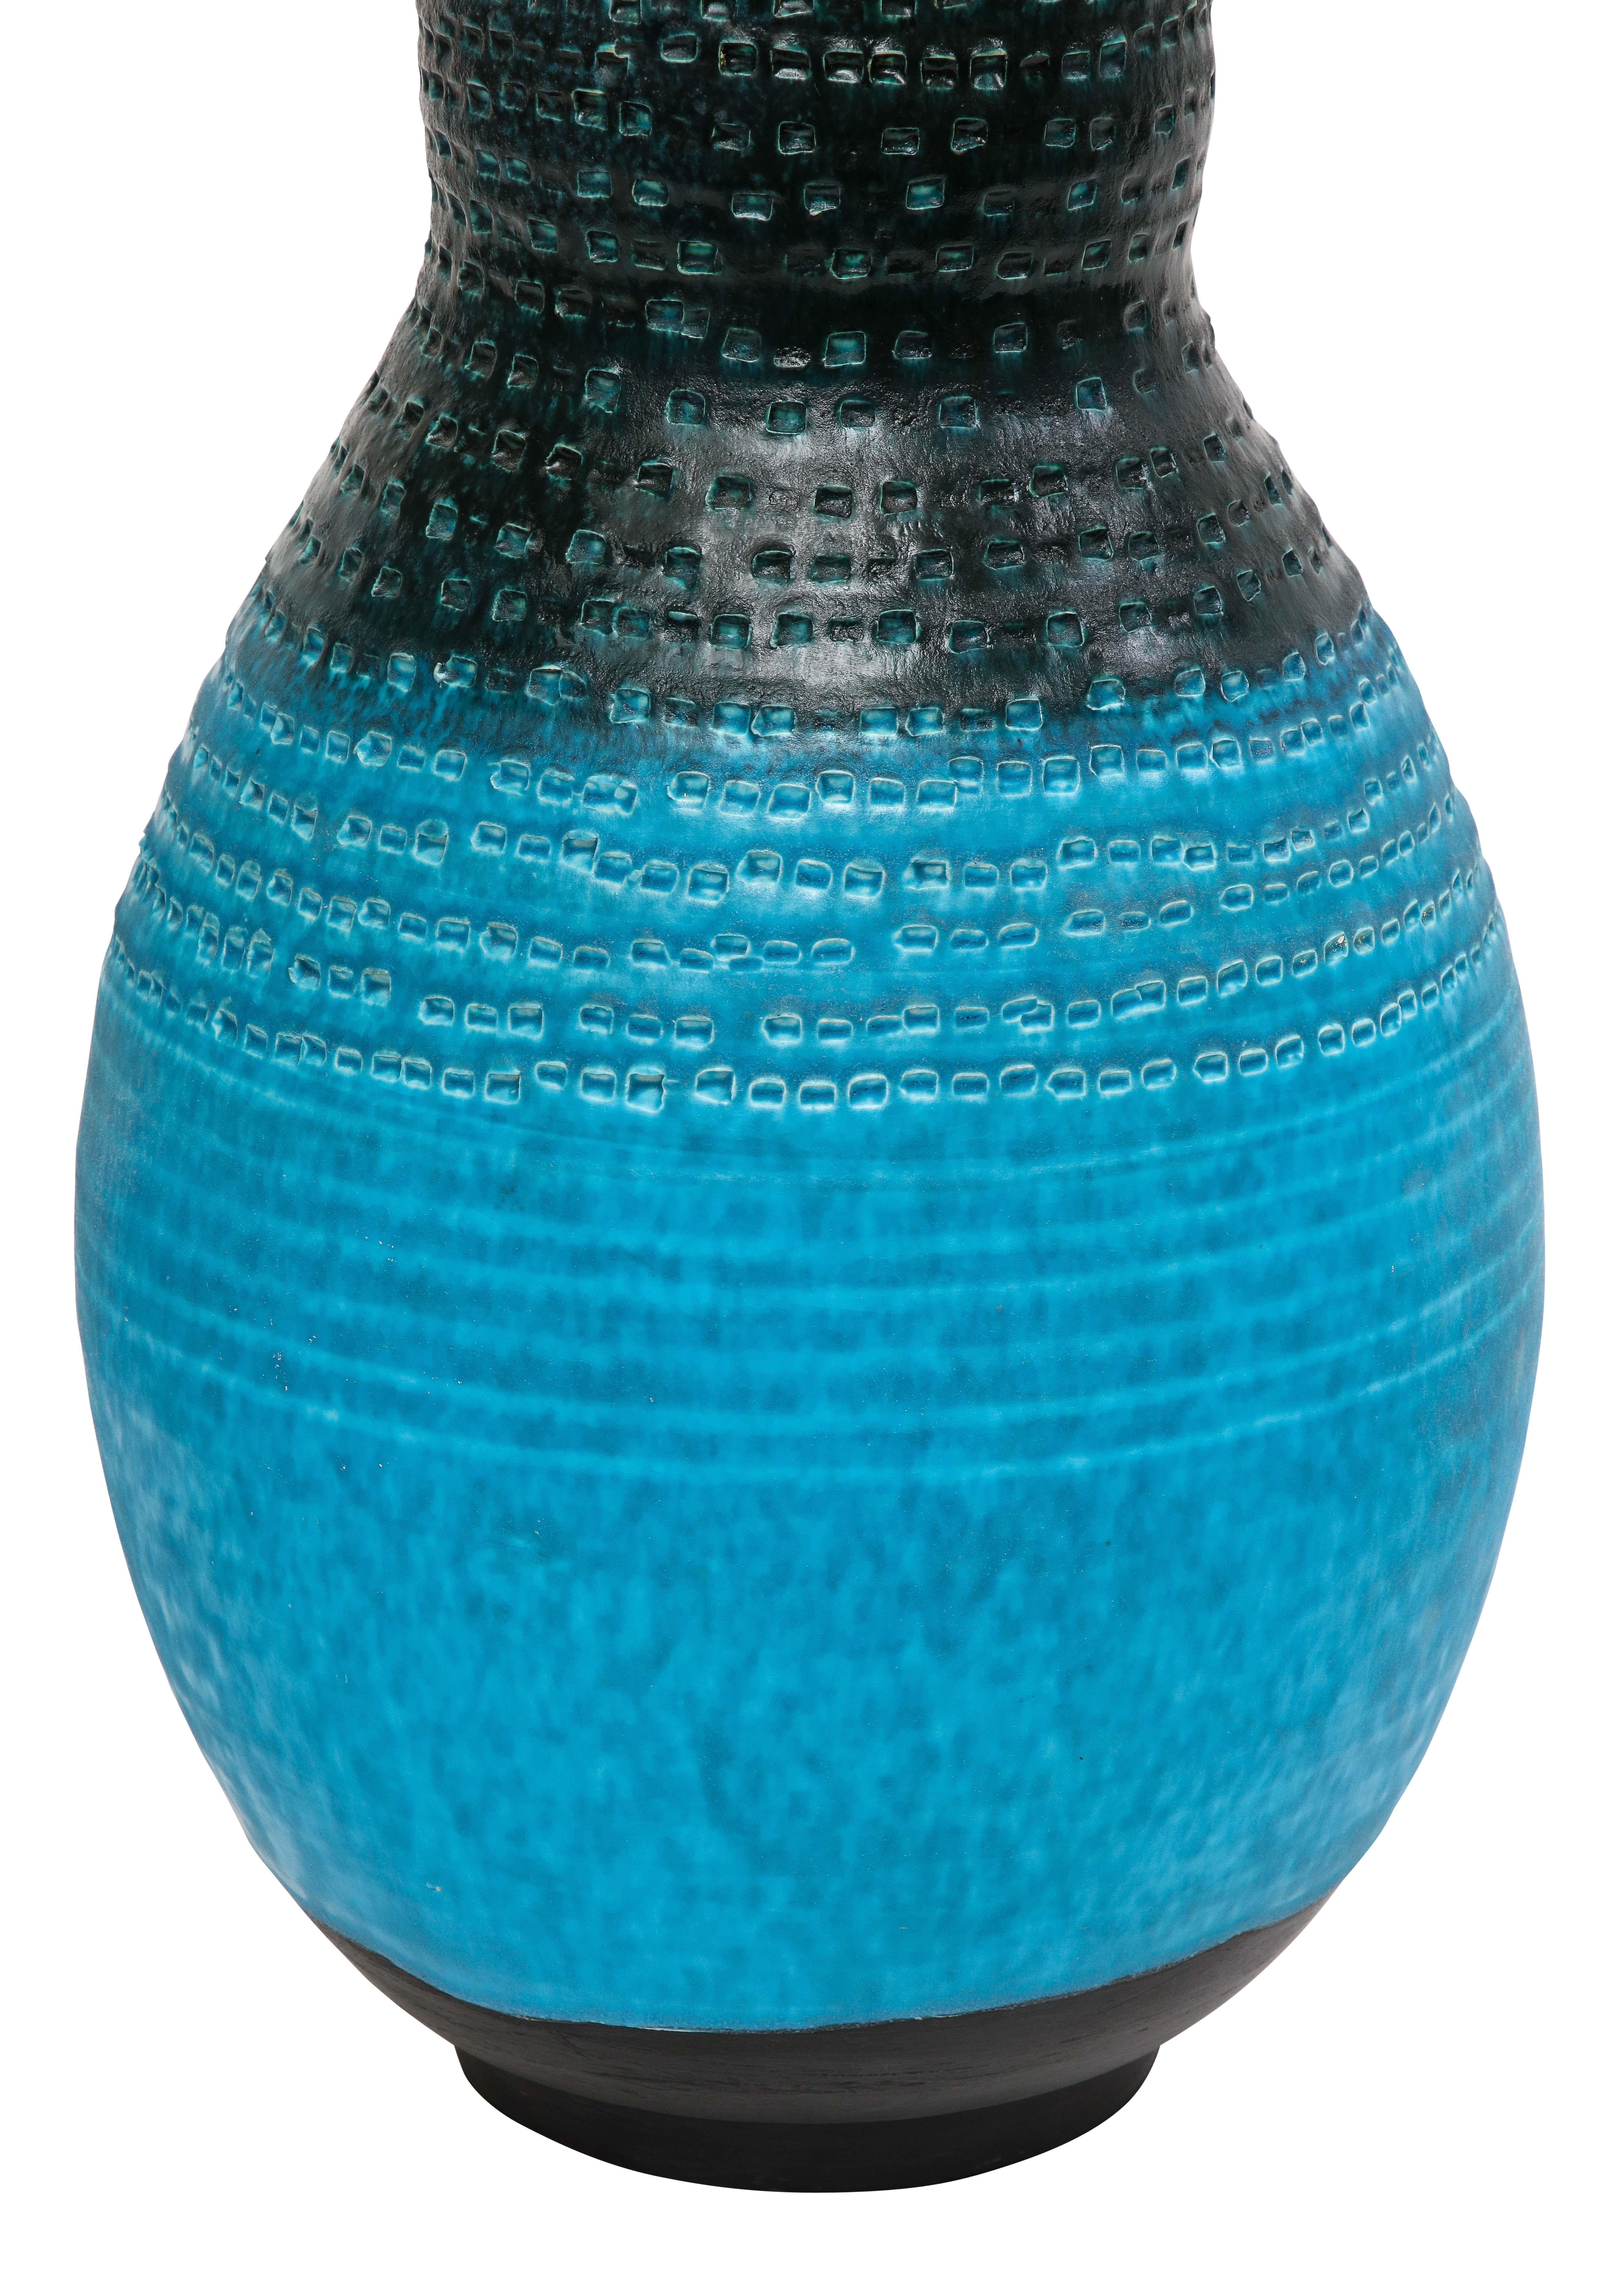 Alvino Bagni Table Lamp, Ceramic, Blue, Black, Impressed 7